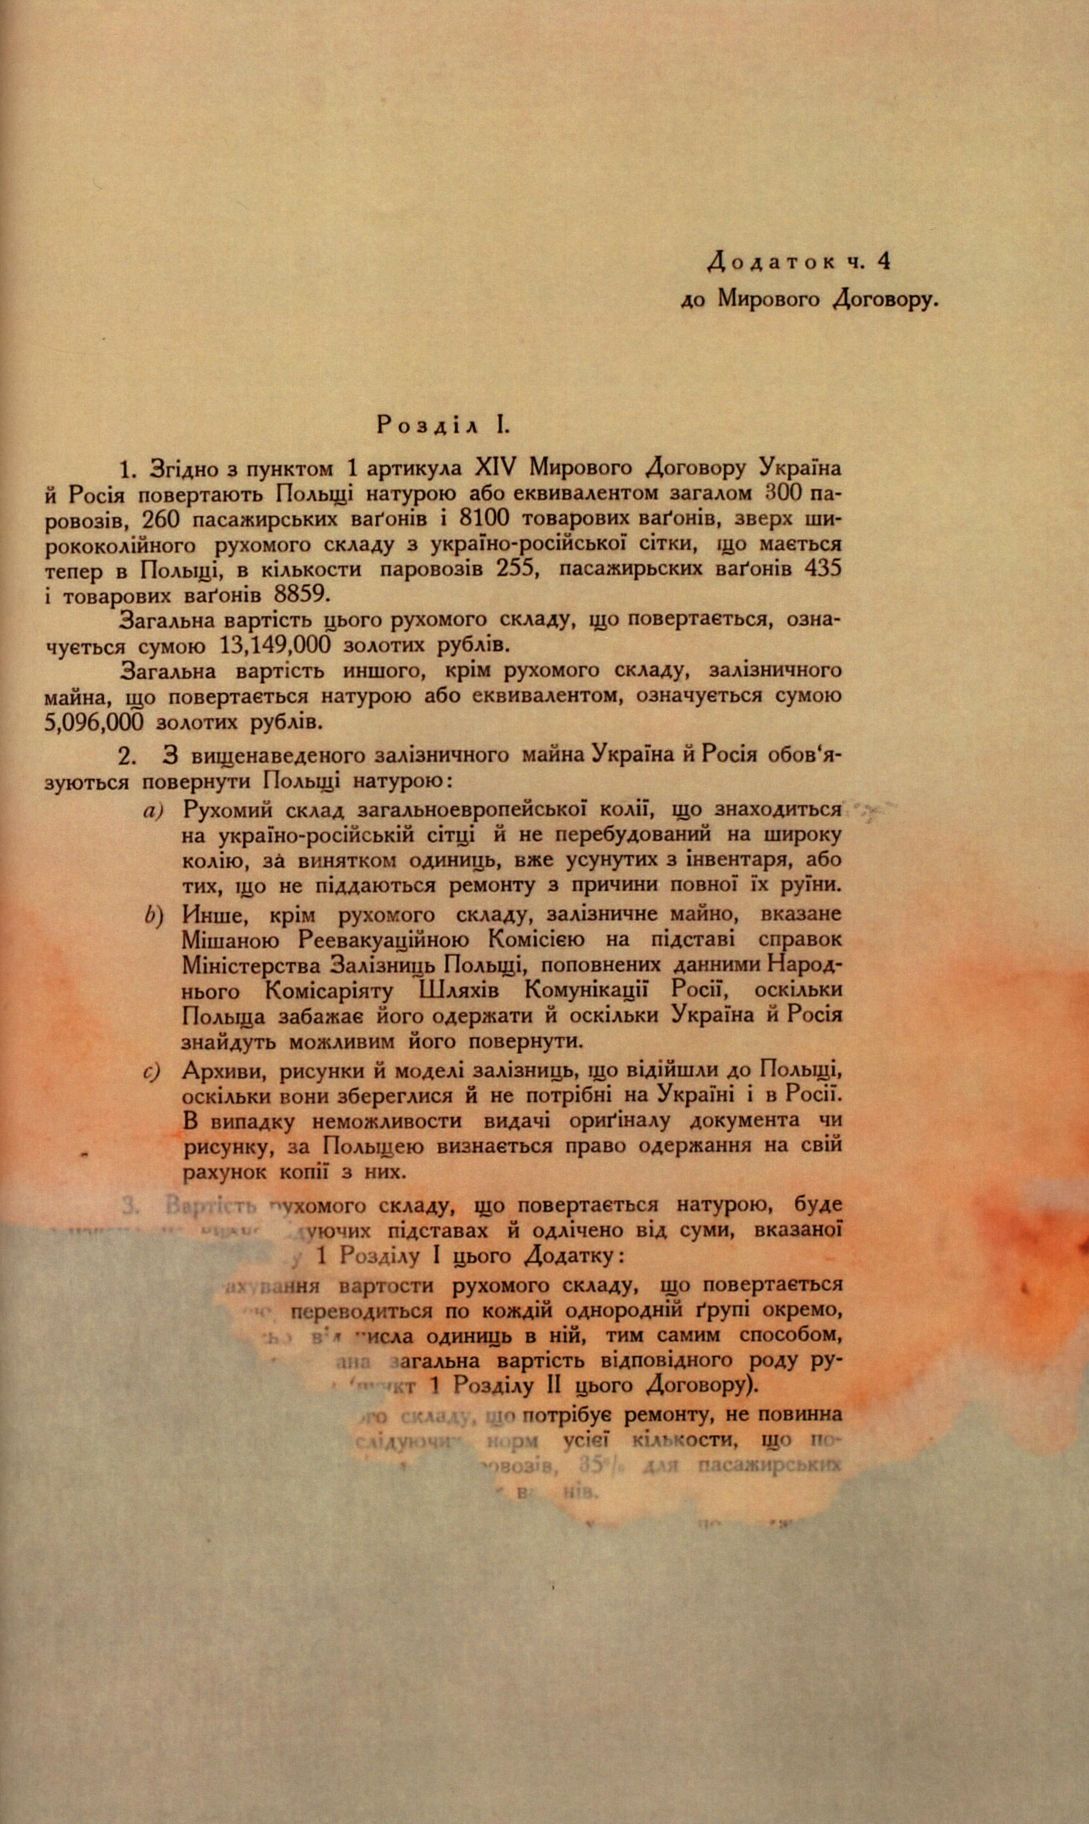 Traktat Pokoju między Polską a Rosją i Ukrainą podpisany w Rydze dnia 18 marca 1921 roku, s. 60, MSZ, sygn. 6739.